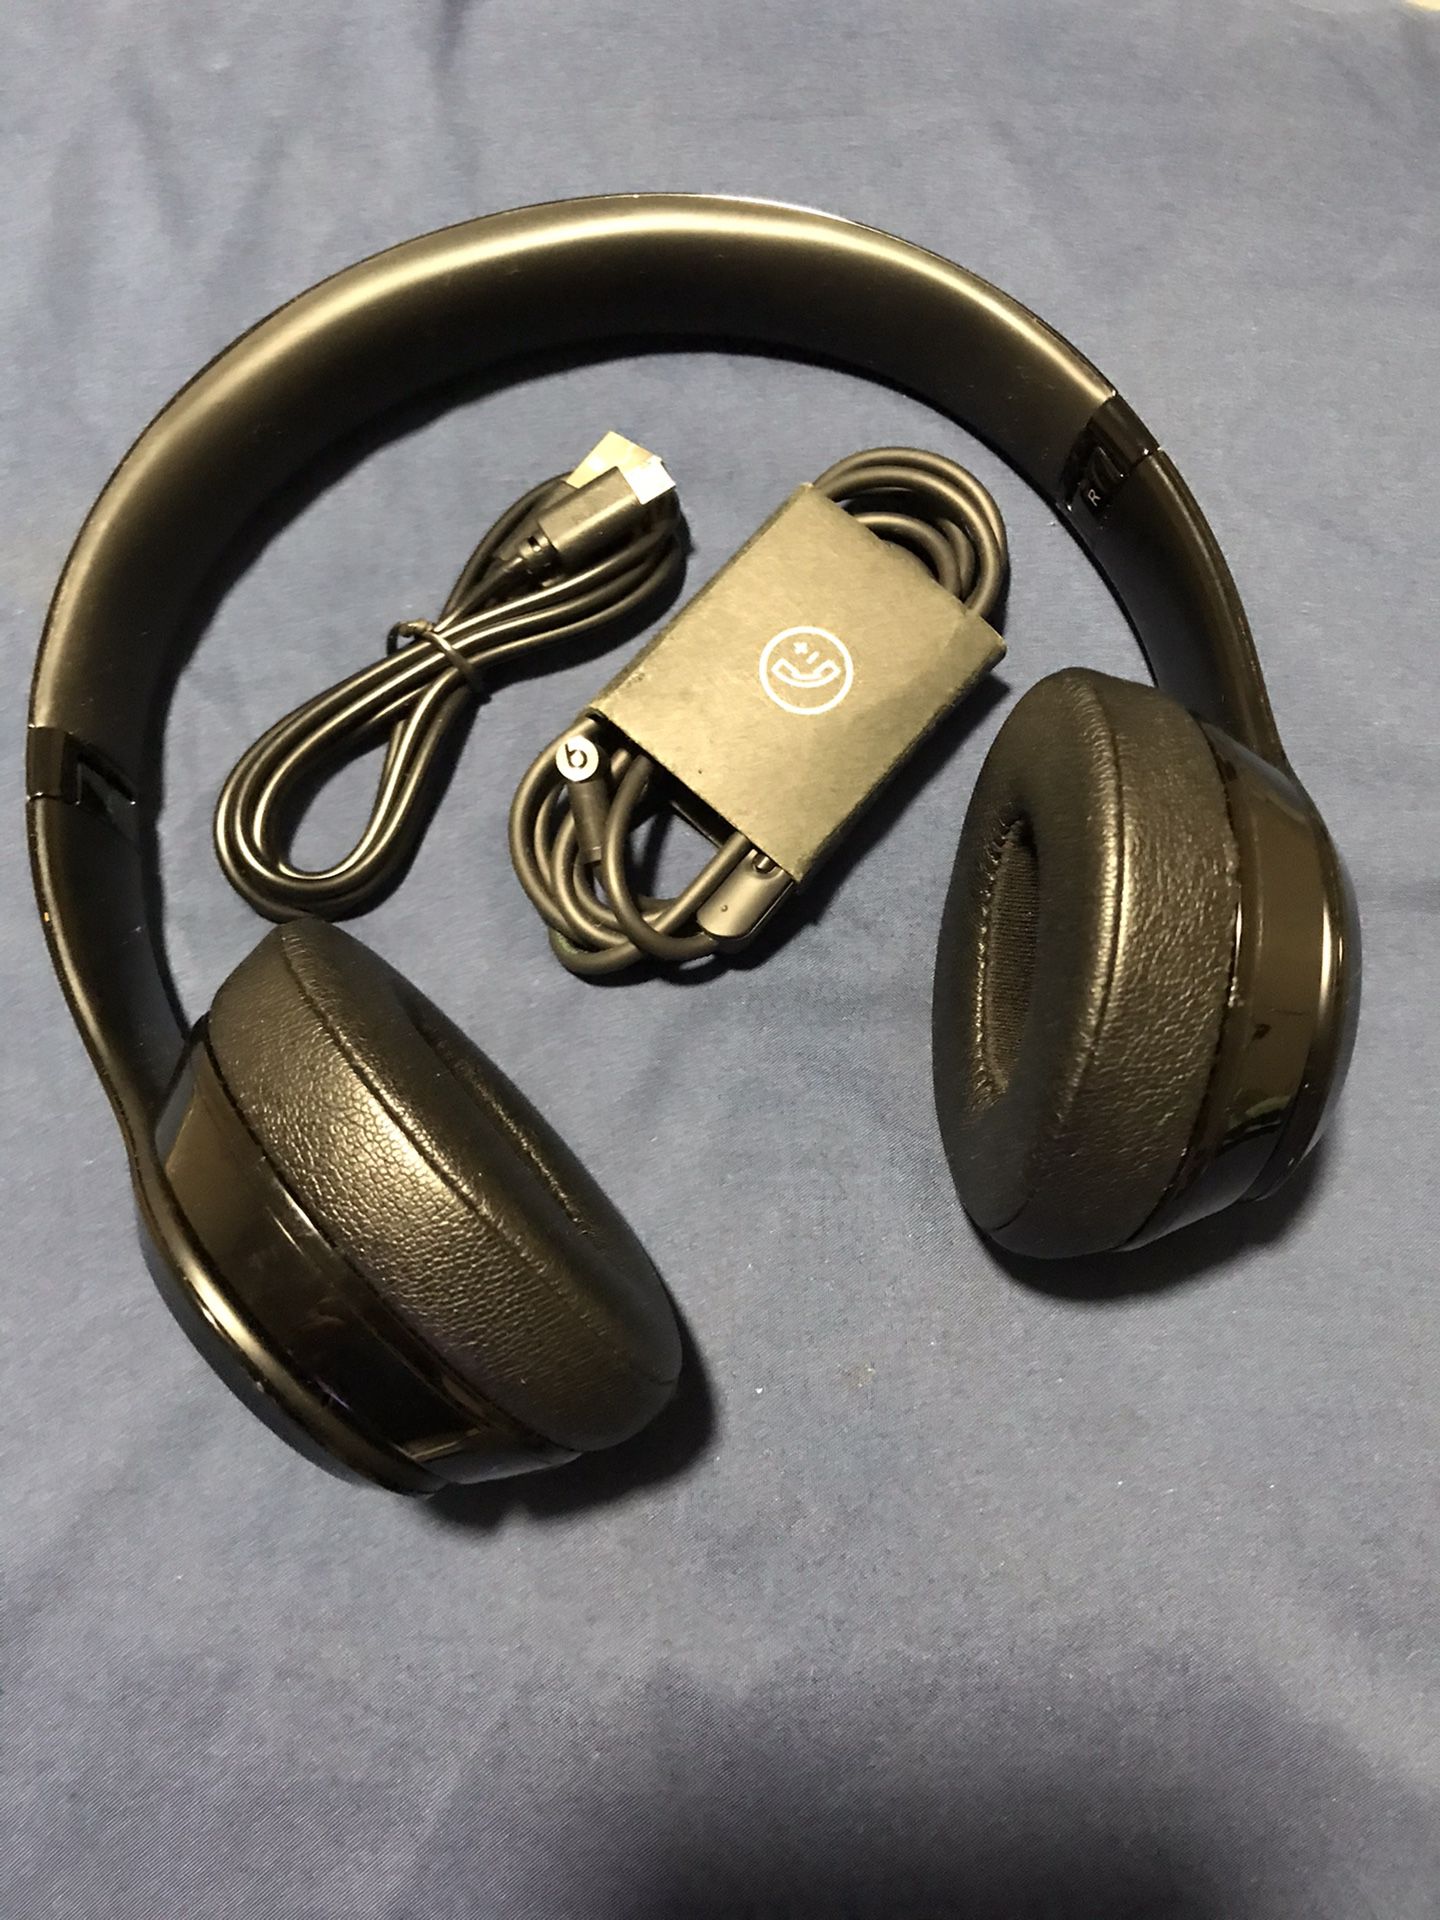 Beats by Dre “Solo 3” wireless headphones (Matte Black)